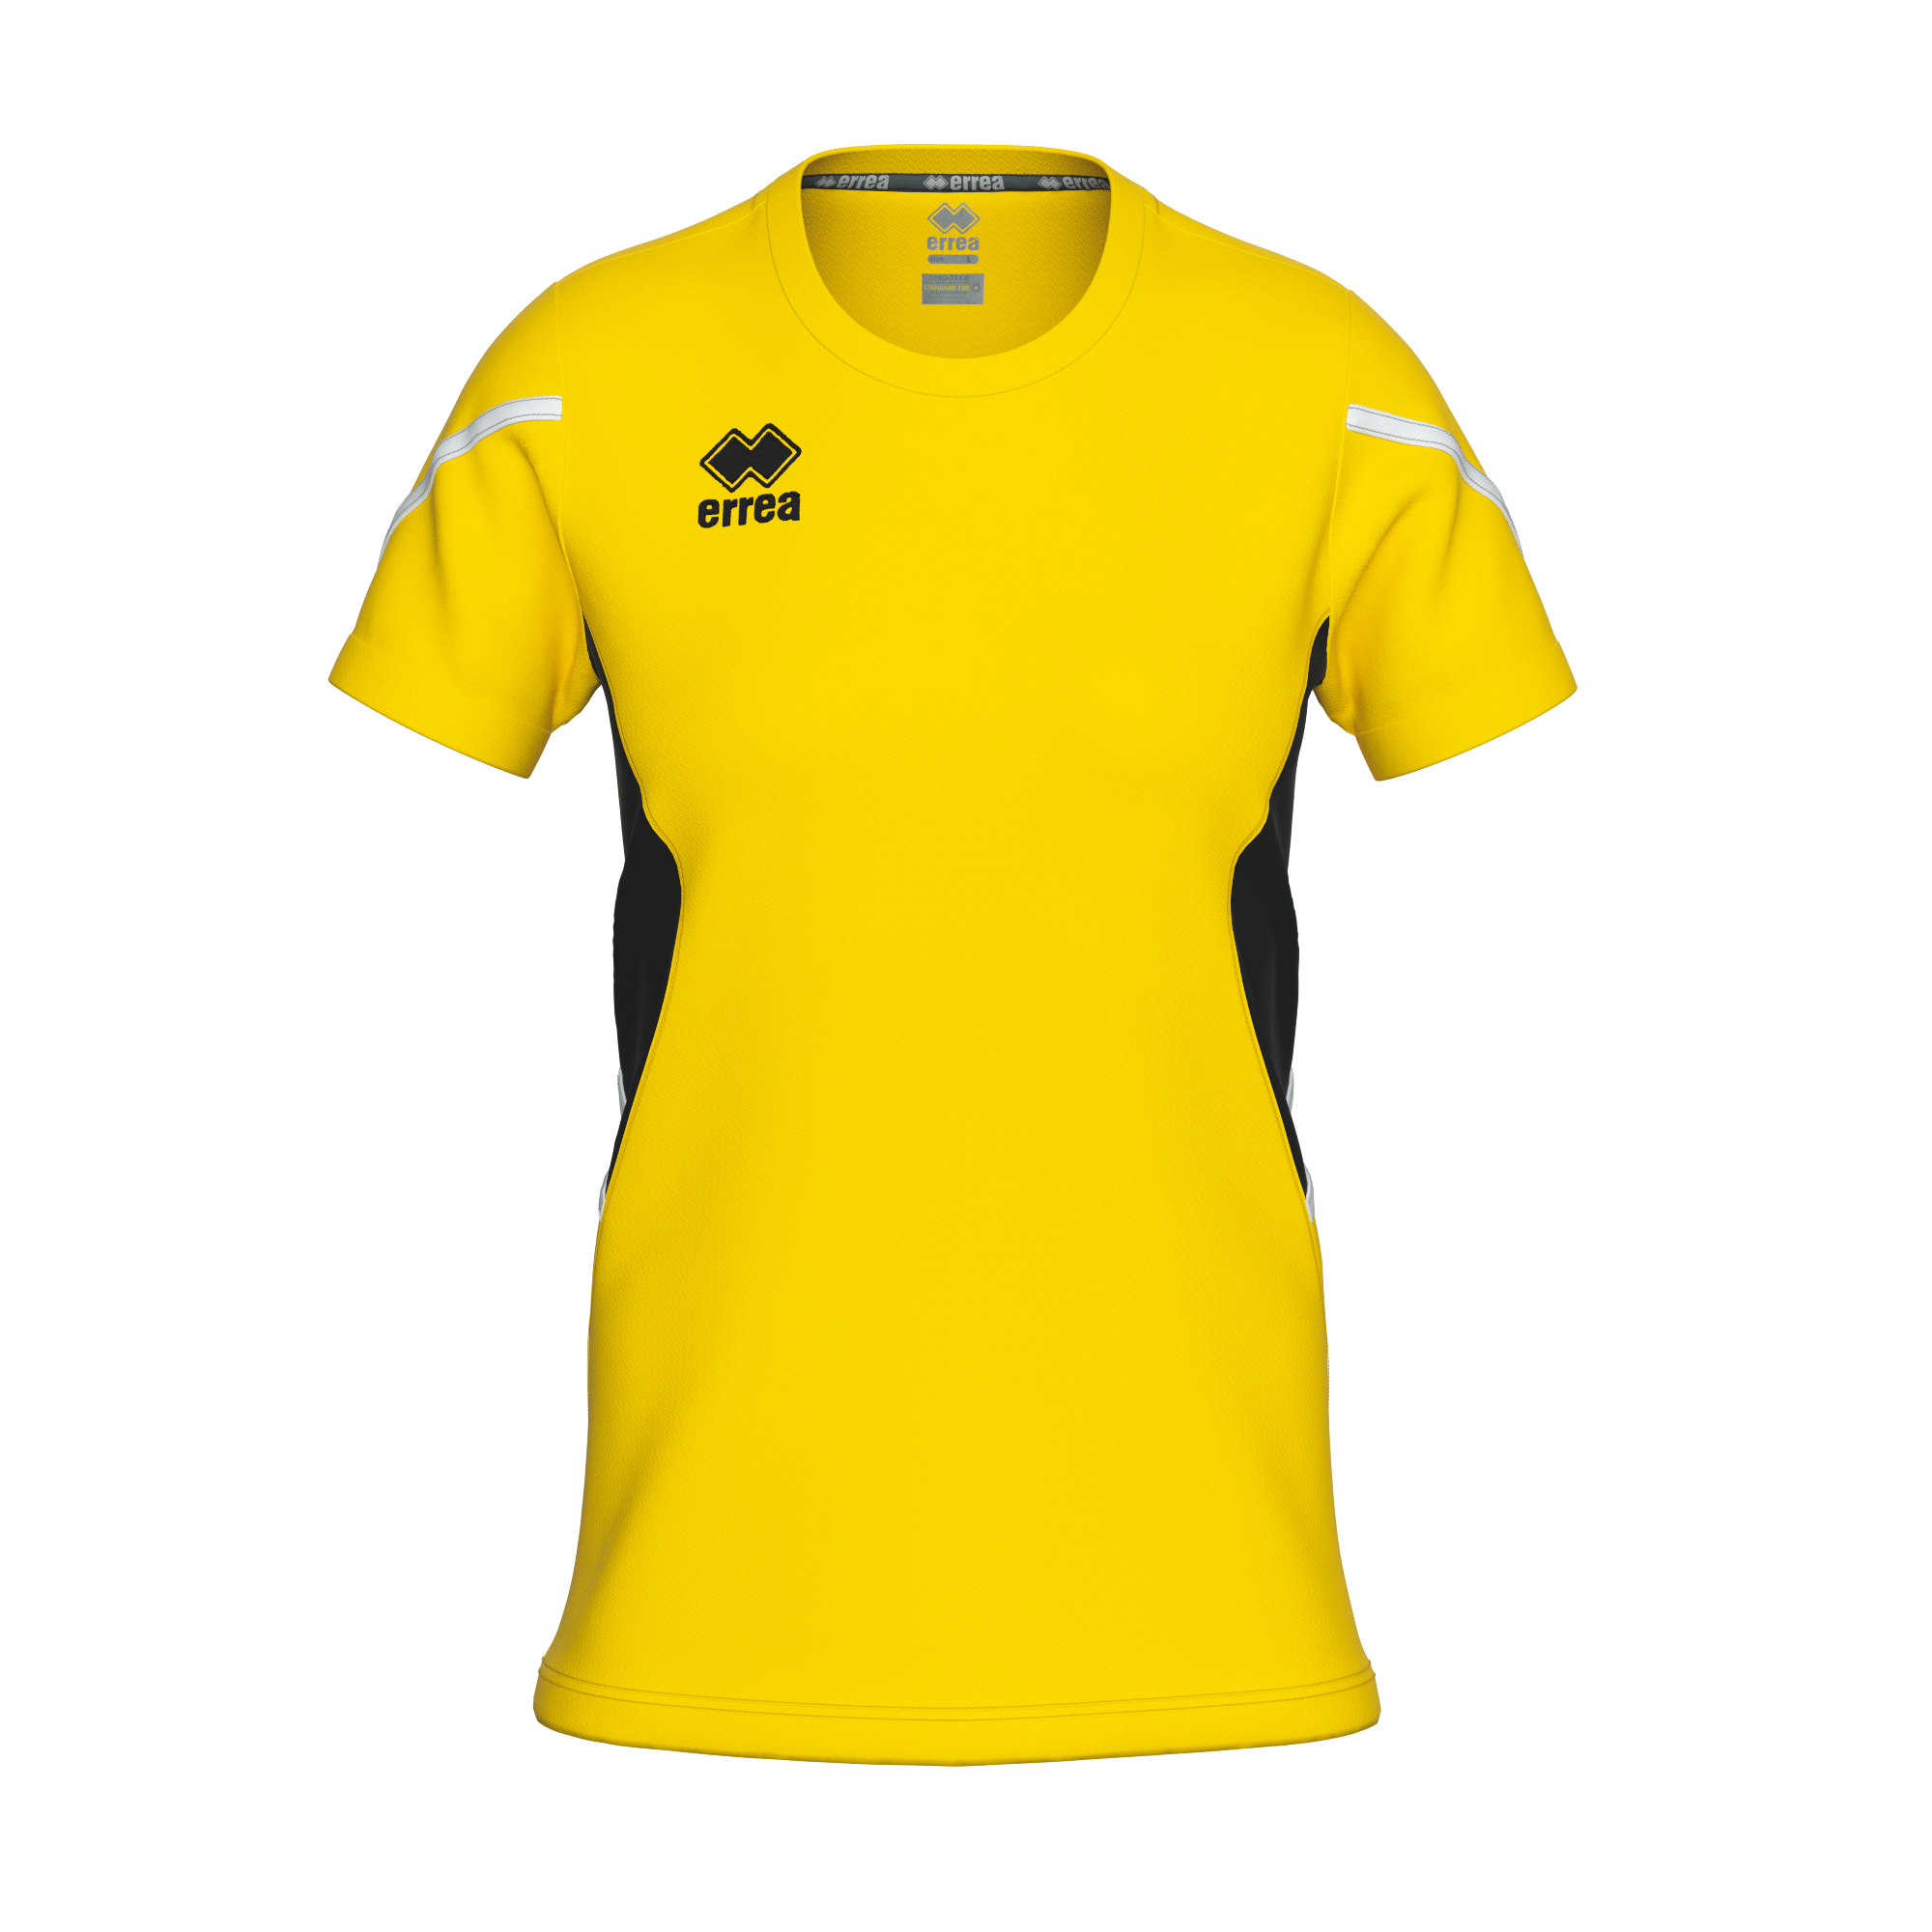 Errea Corinne Volleyball Shirt Yellow Black White